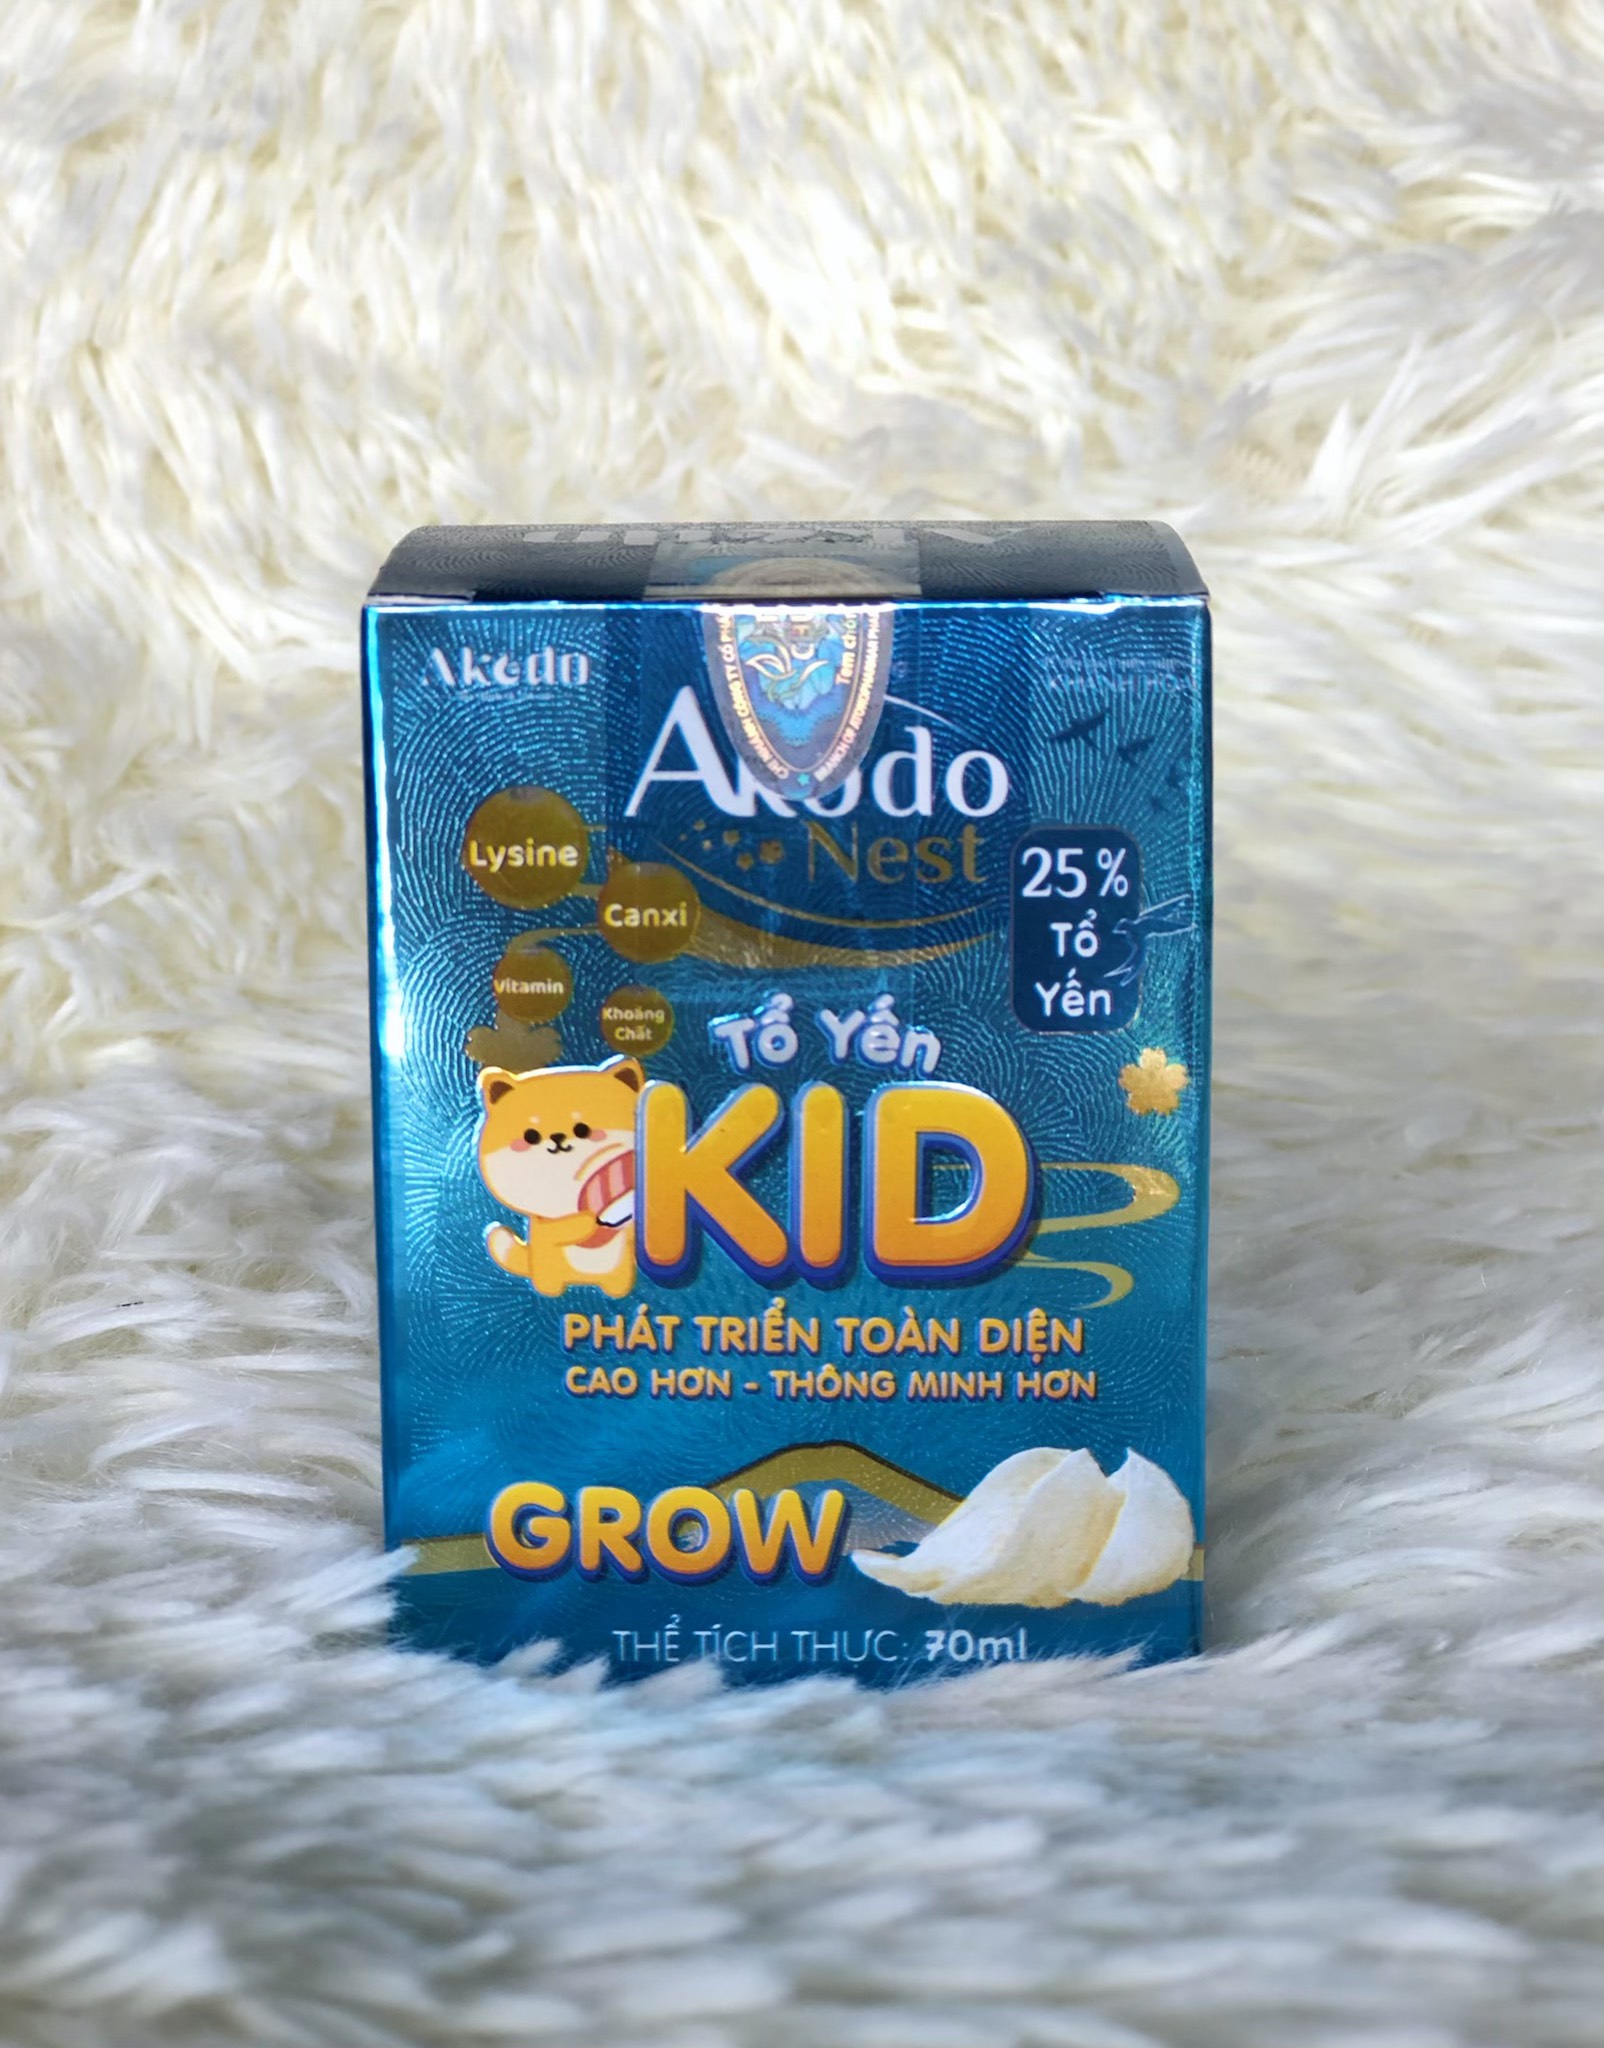 Yến Sào Akodo Kids Grow 25% yến dành cho bé từ 6 tháng tuổi (hộp 1 hũ 70ml)